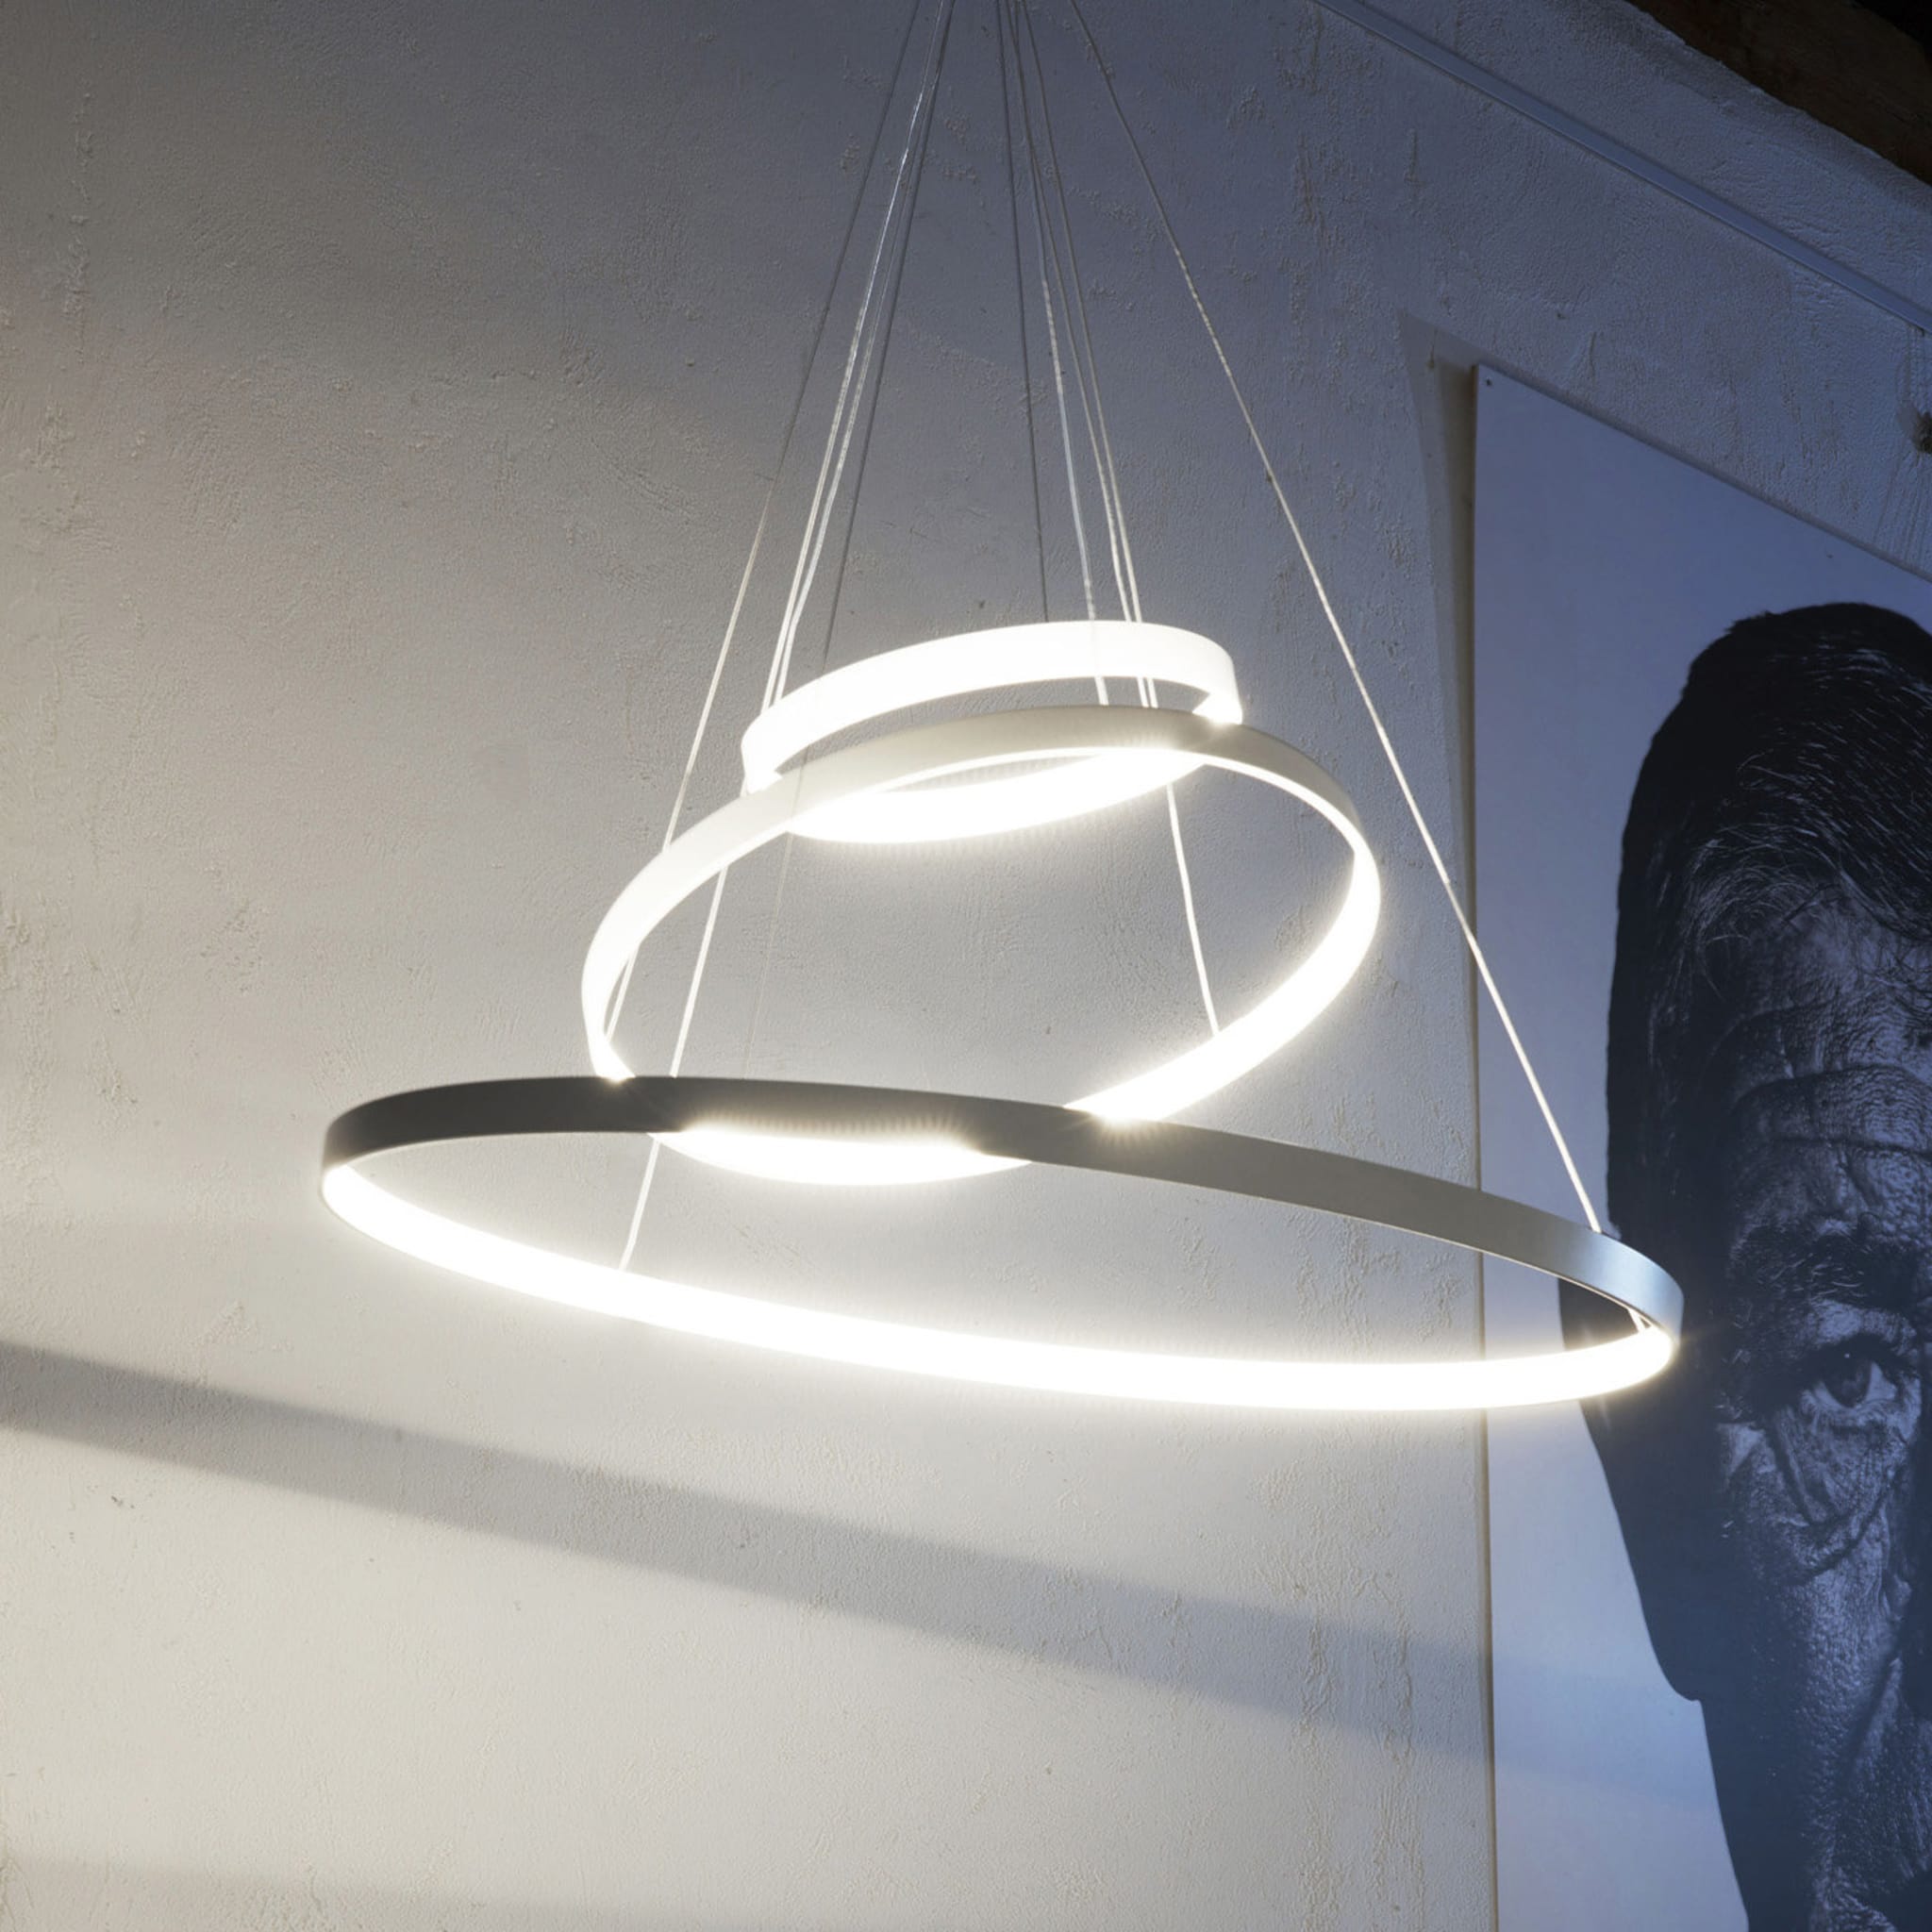 Rings Orizzontale White Pendant Lamp by Valerio Cometti - V12 Design - Alternative view 5